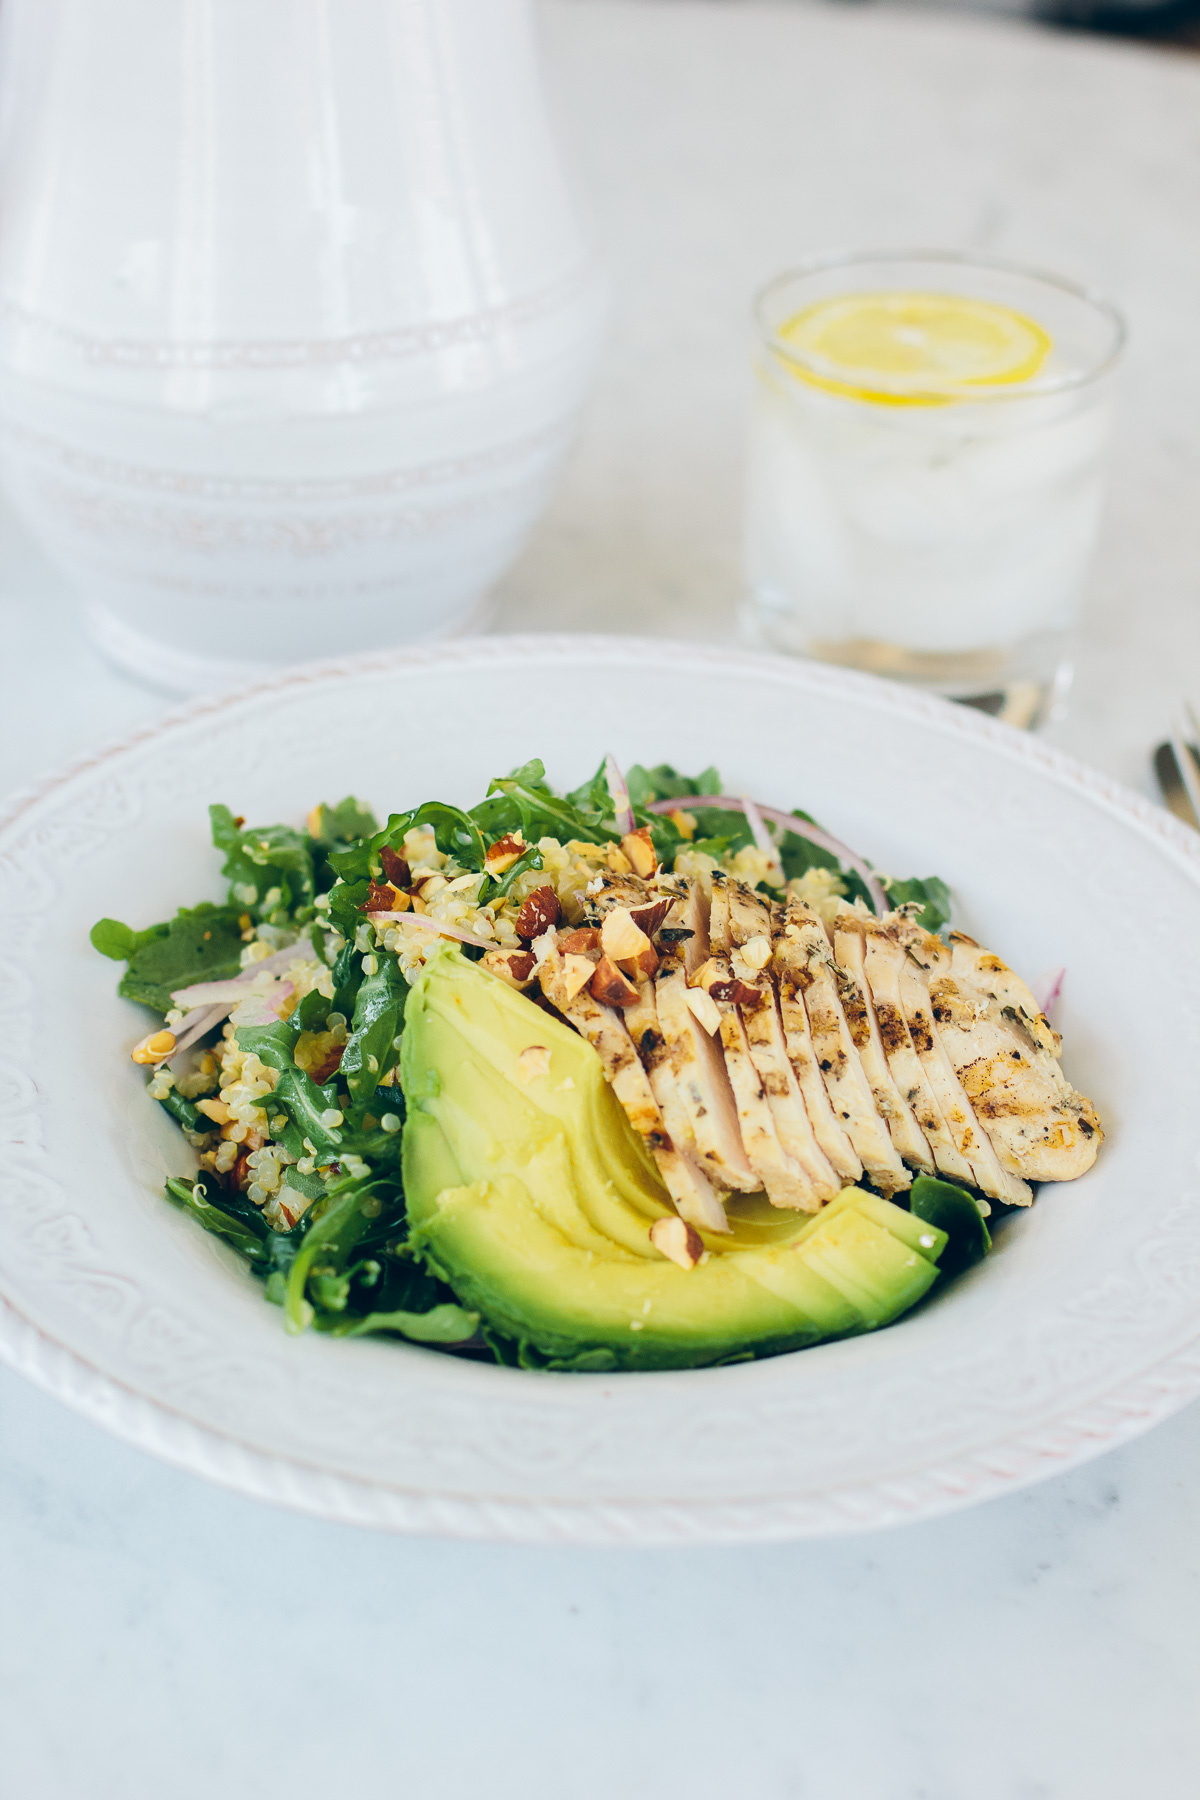 healthy quinoa and arugula salad with avocado and chicken